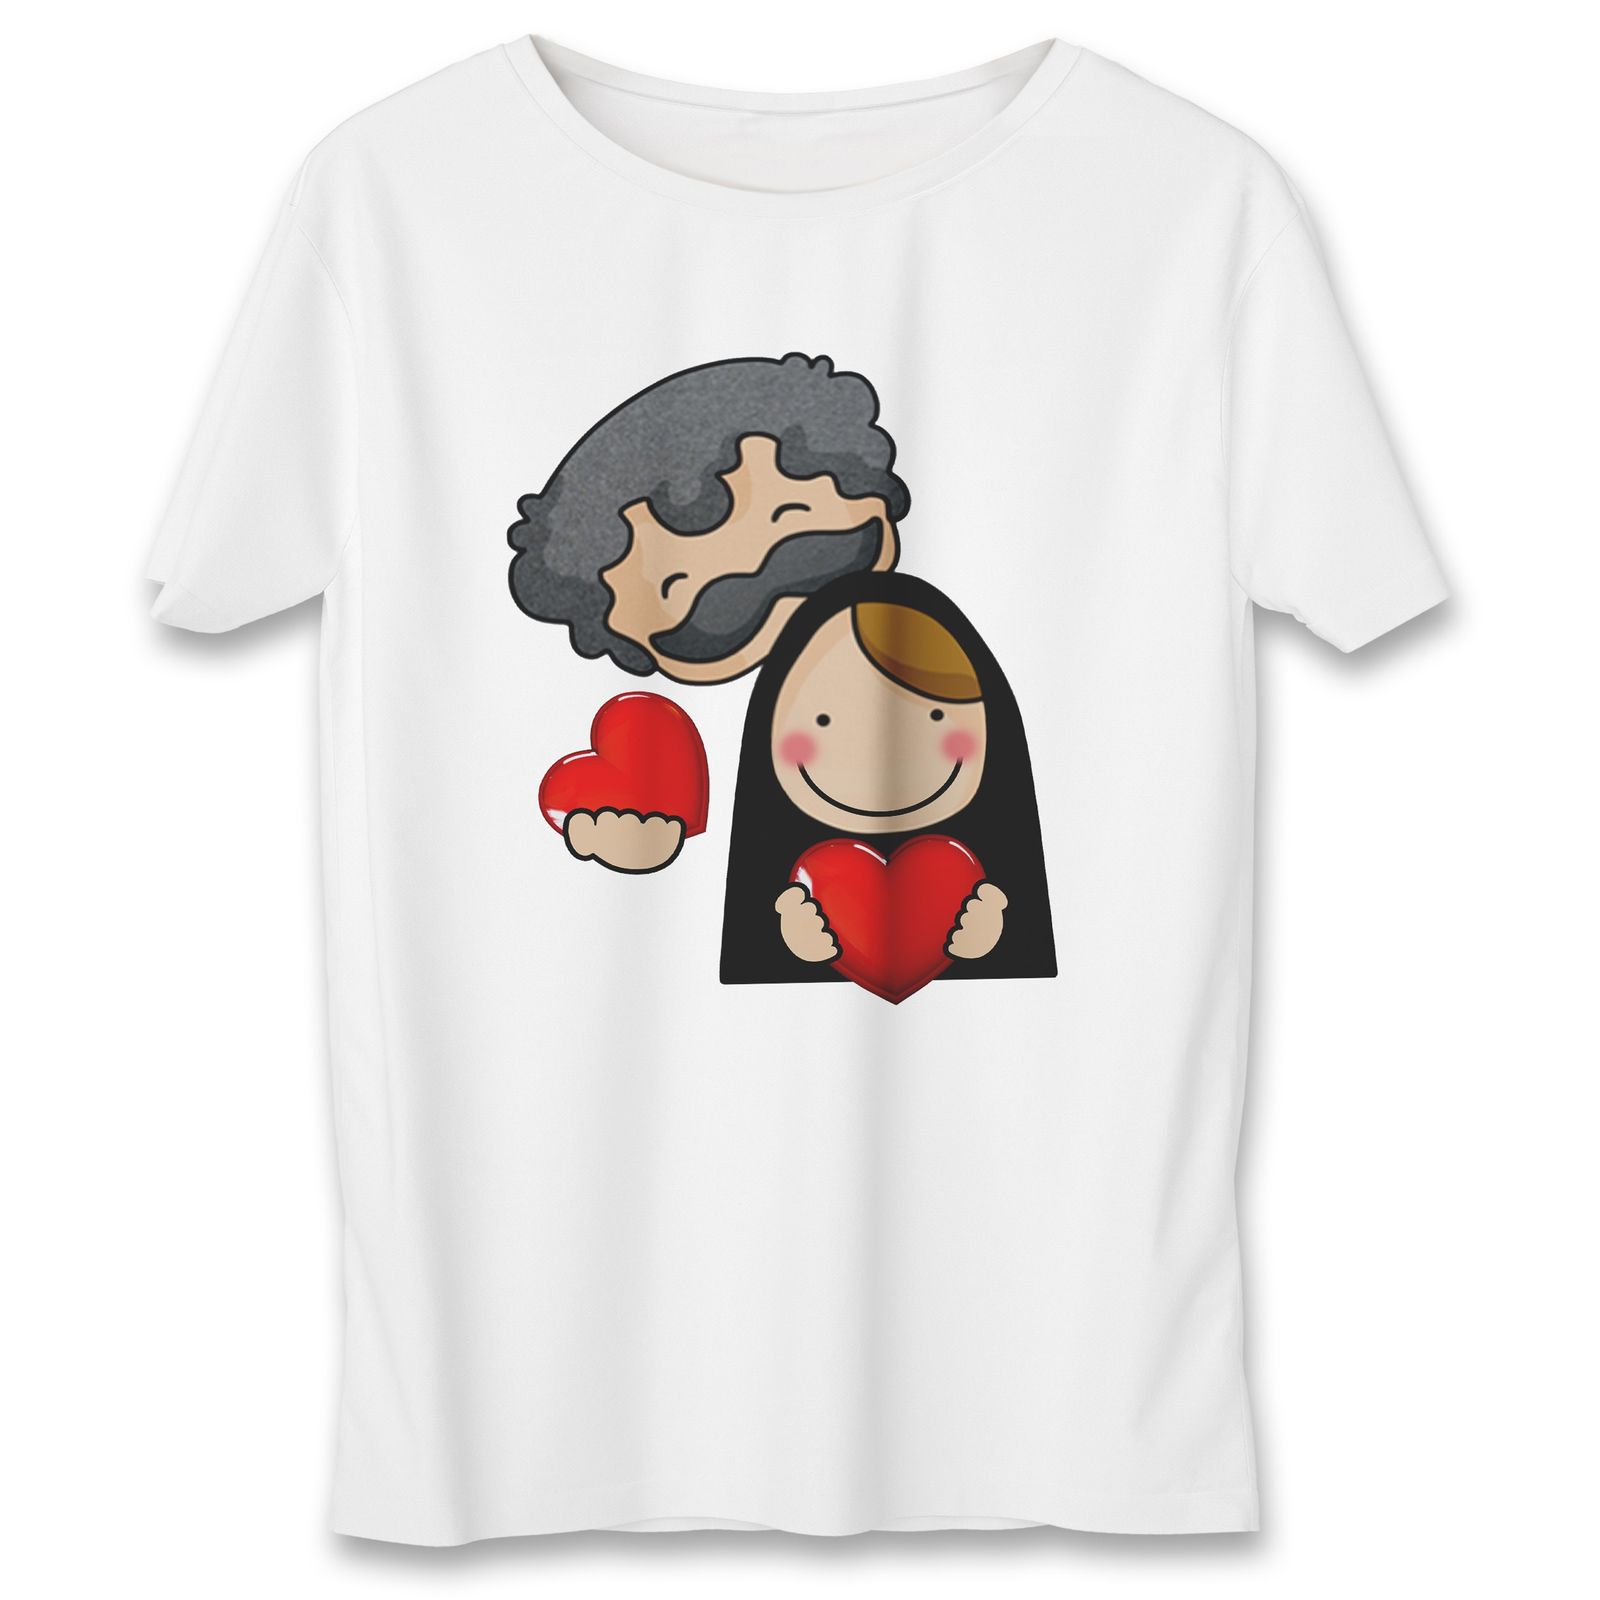 تی شرت زنانه به رسم طرح زوج کد 577 -  - 1